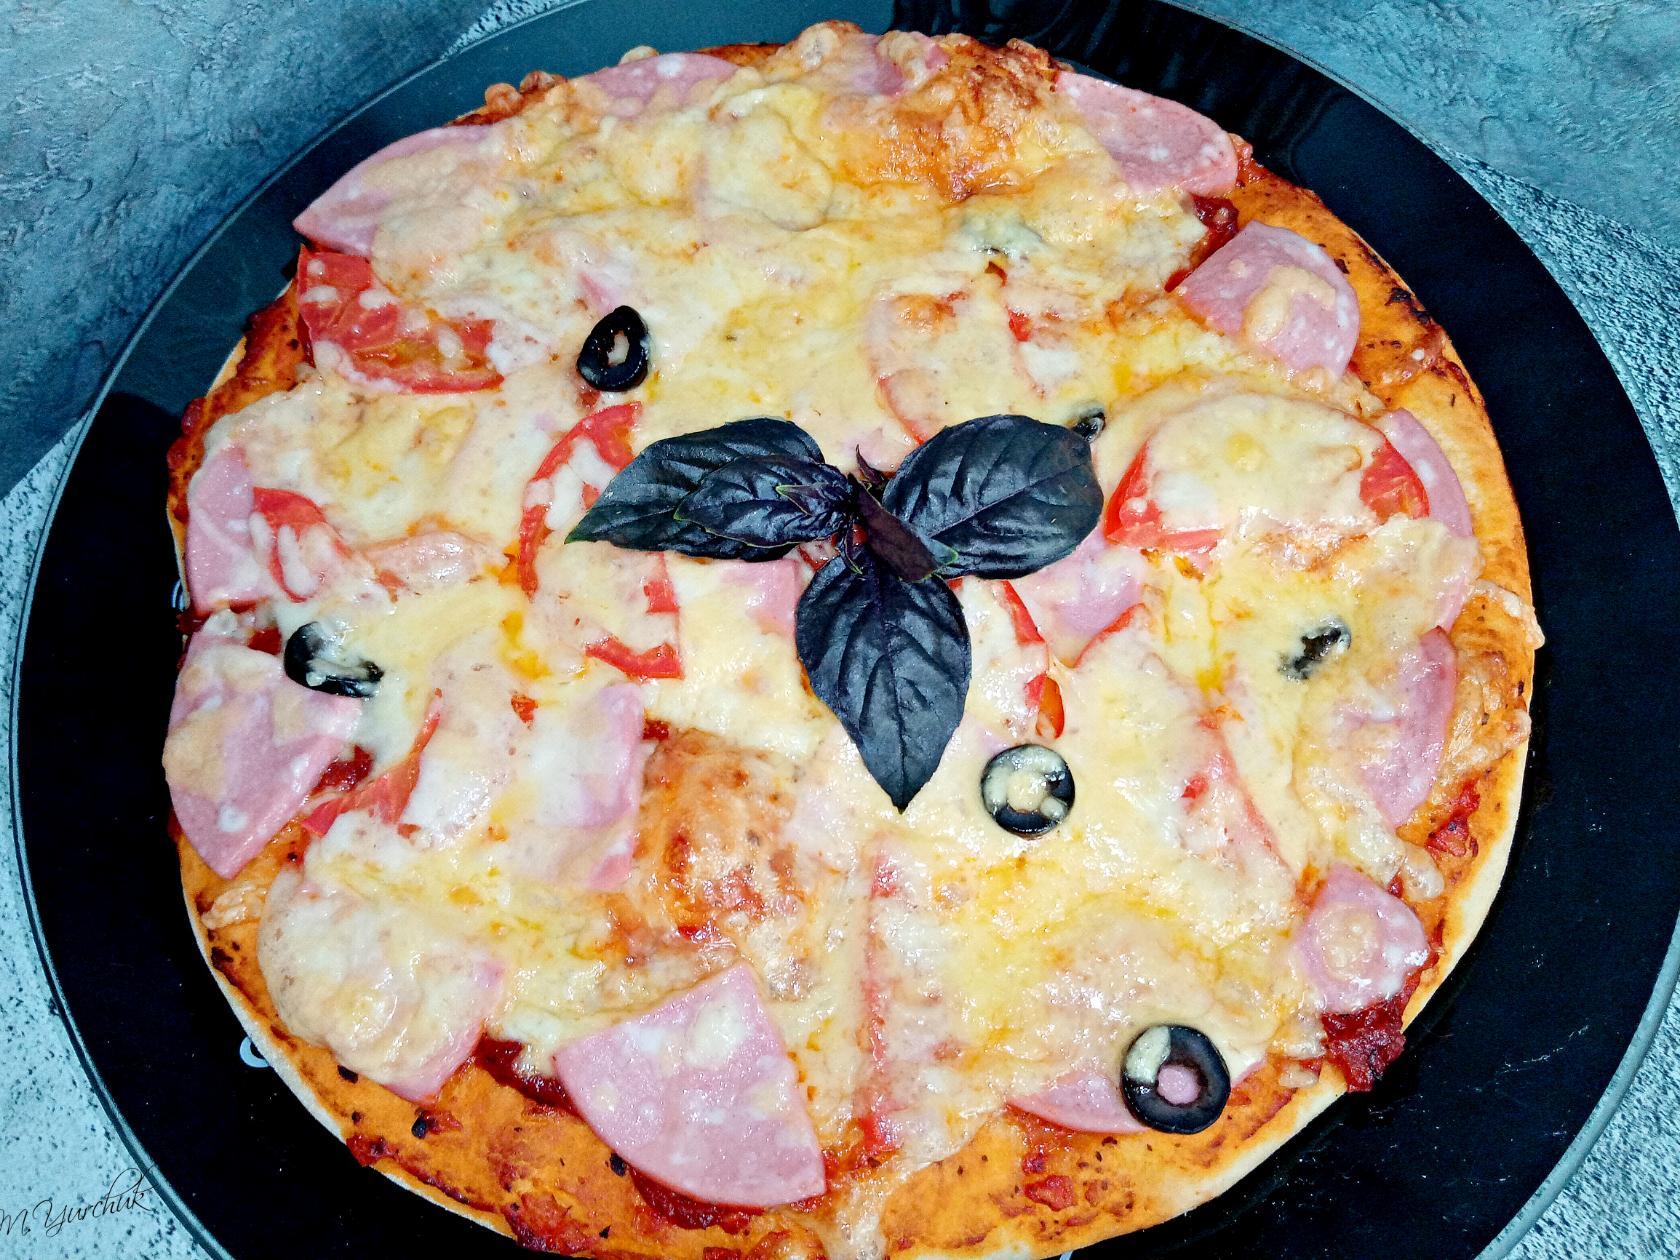 Домашняя пицца, пошаговый рецепт на ккал, фото, ингредиенты - AlenaZaytseva